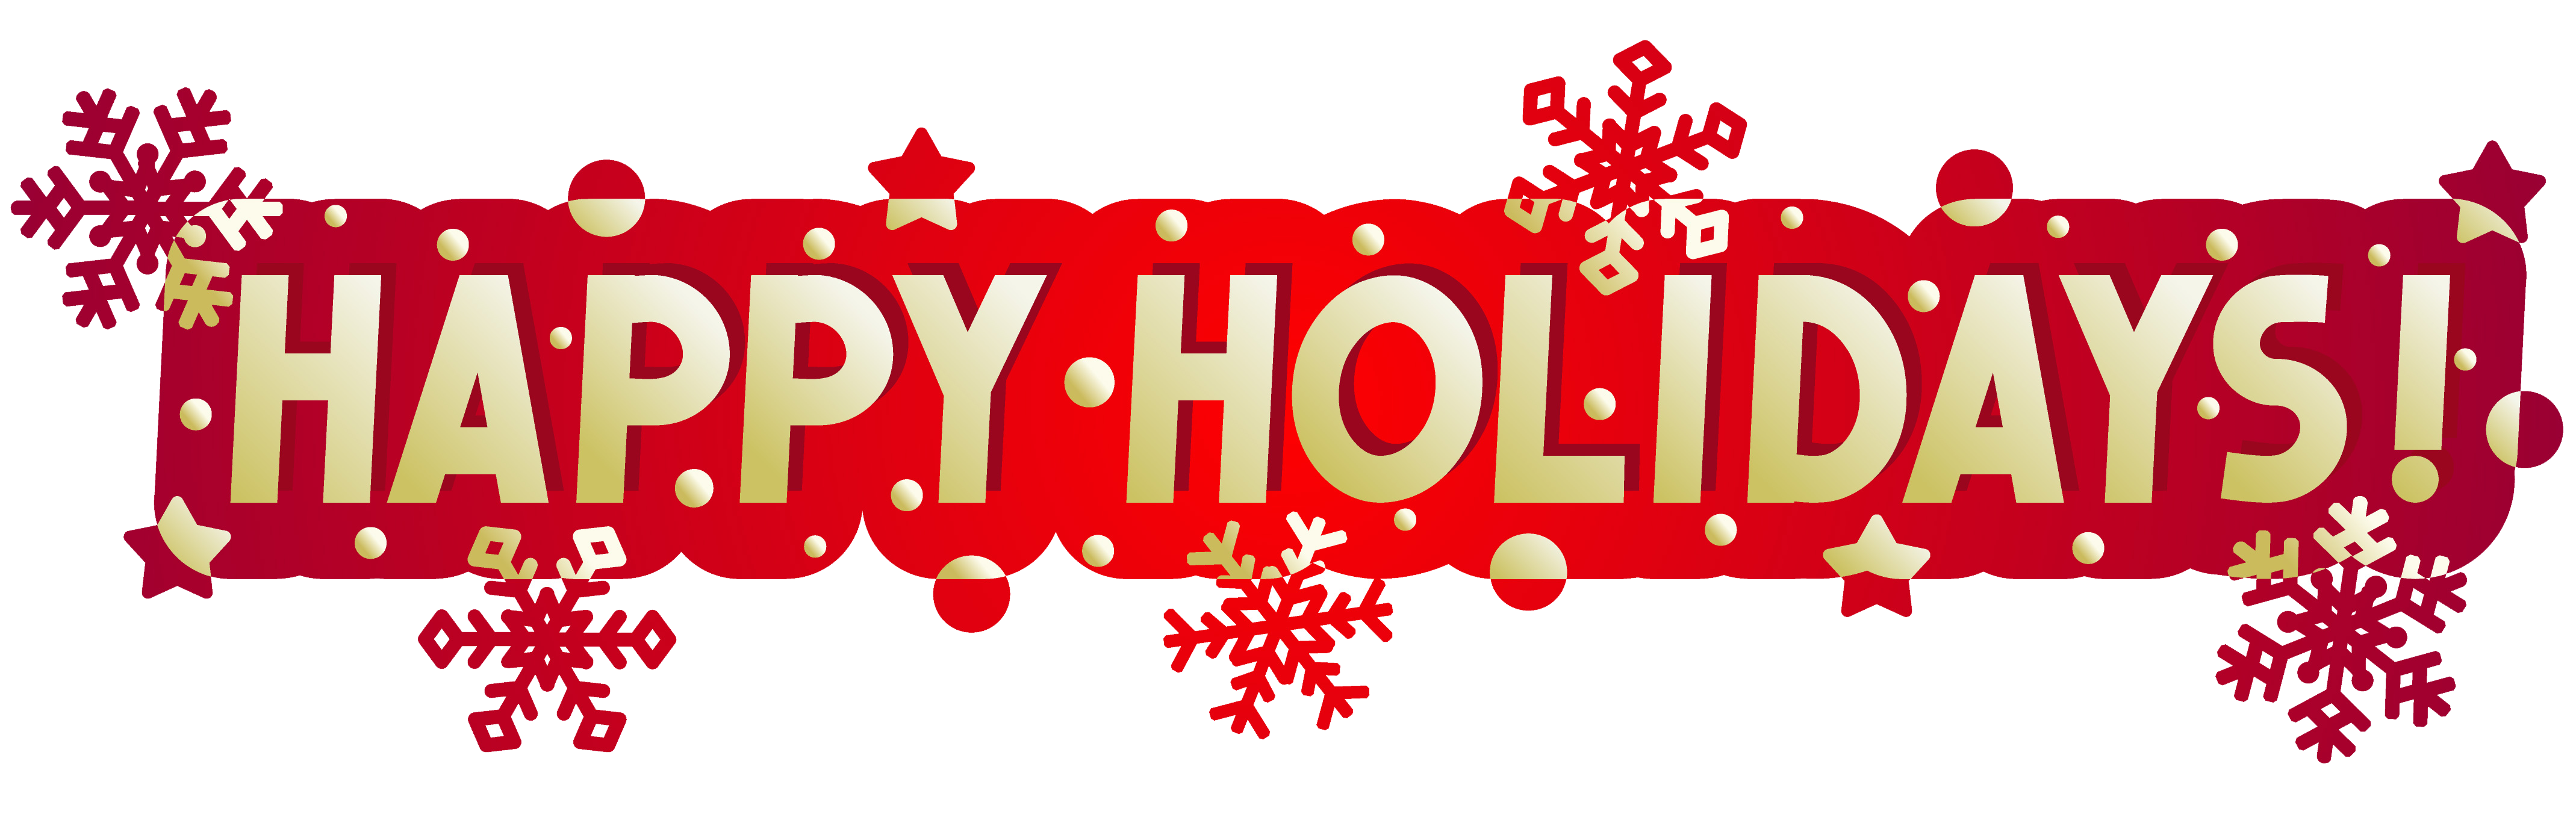 happy holidays clip art . Fac - Happy Holiday Clip Art